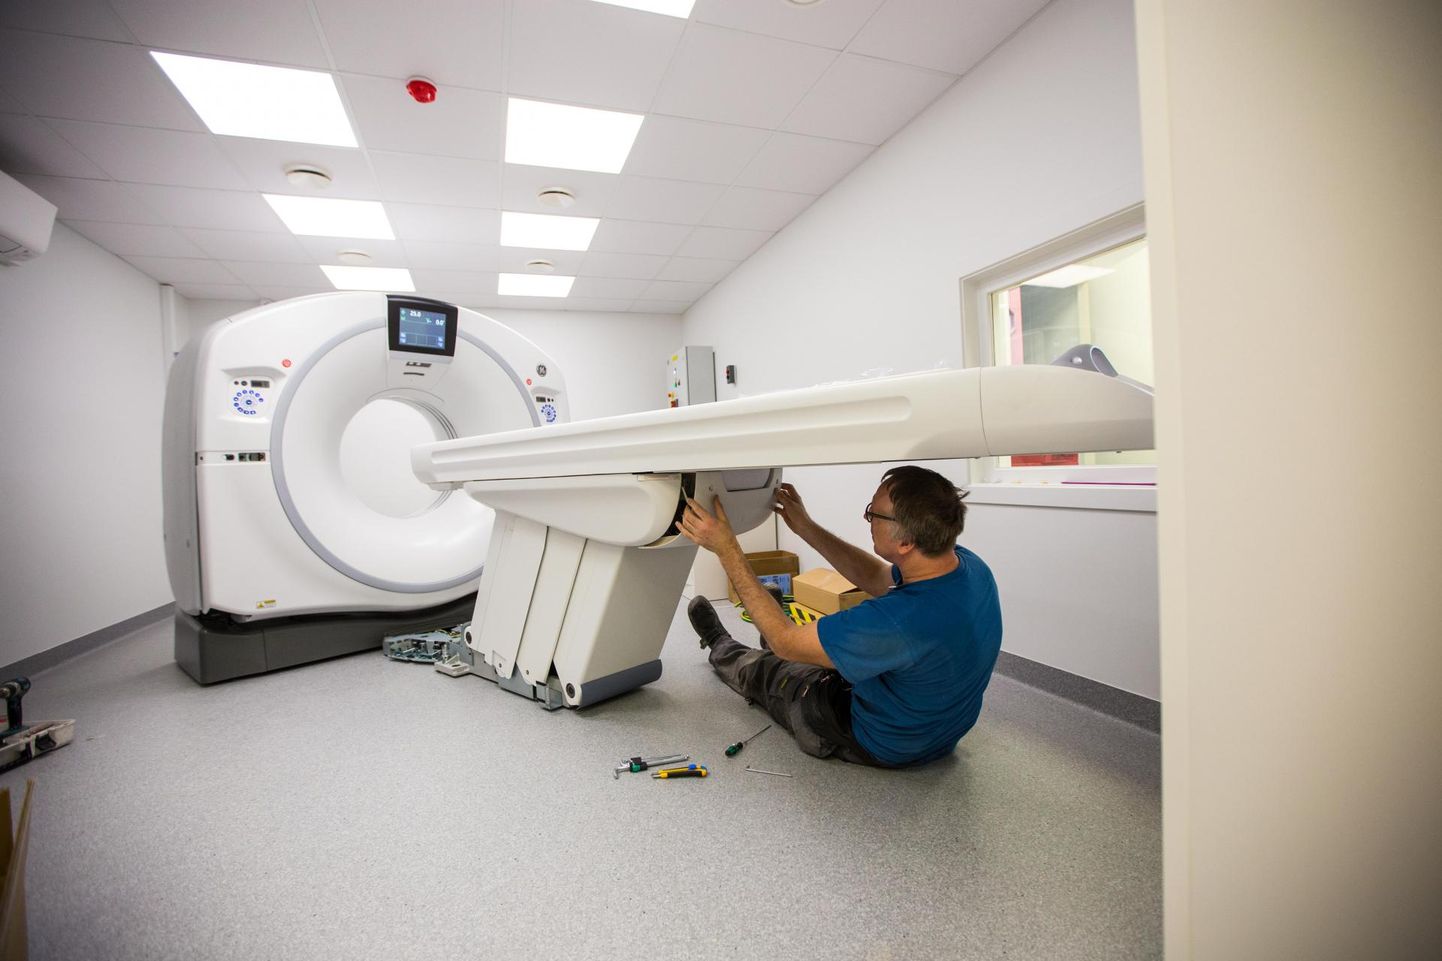 Eelmisel suvel jõudis Rakvere haiglasse ligemale 350 000 eurot maksnud kompuutertomograaf, millega tulevased radioloogiatehnikud tööle hakkavad.